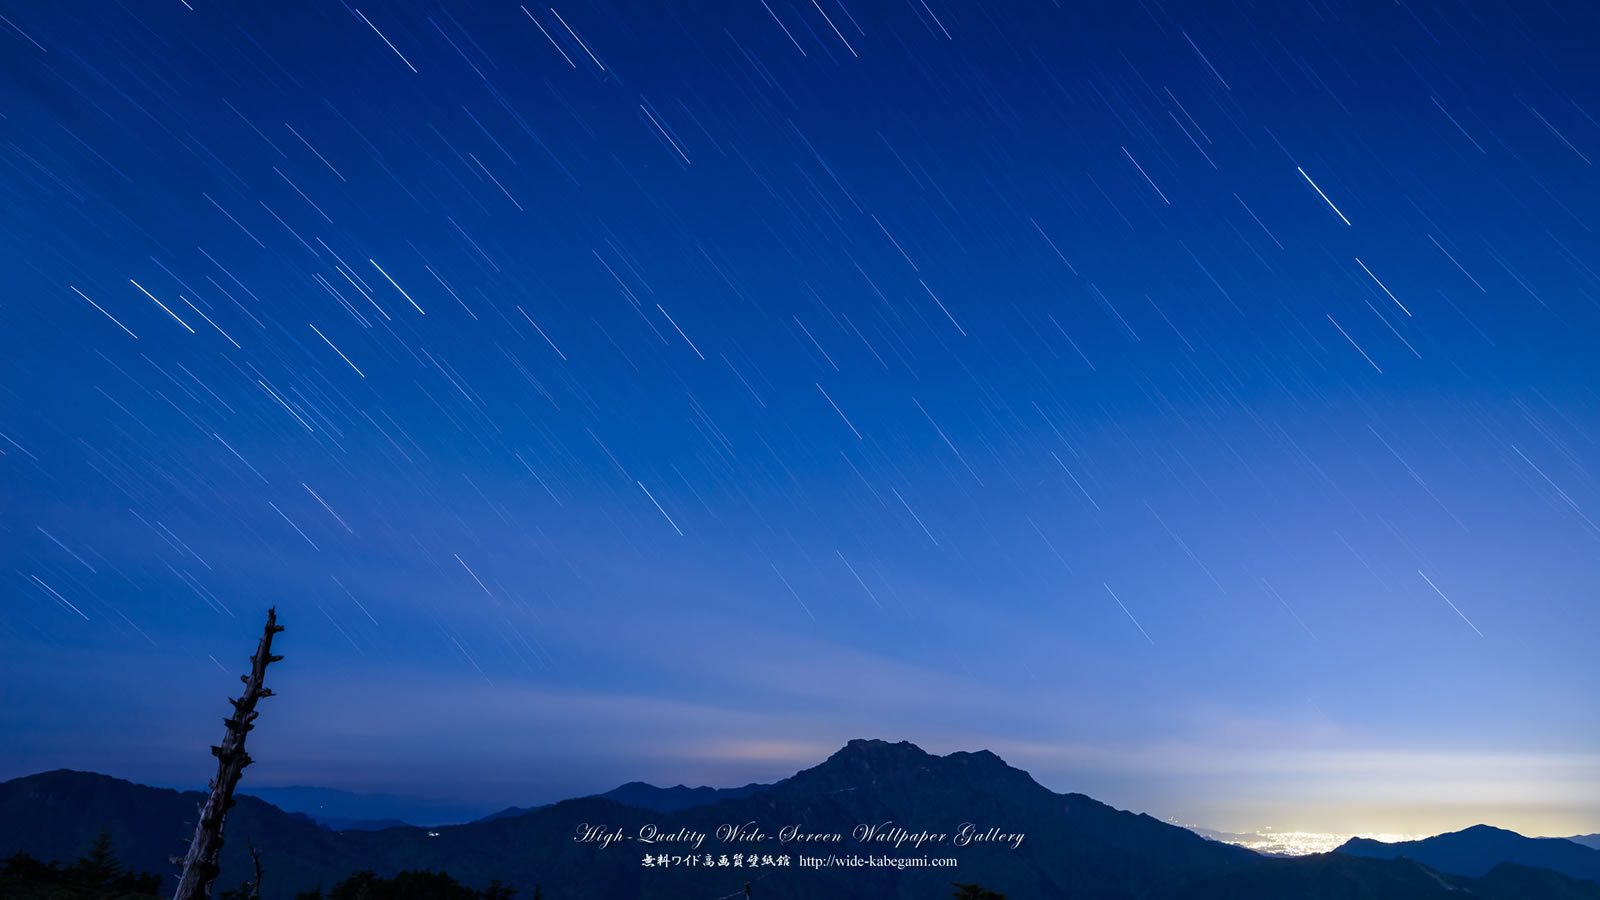 自然風景のワイド壁紙 1600x900 星降る石鎚山 3 星景写真 無料ワイド高画質壁紙館